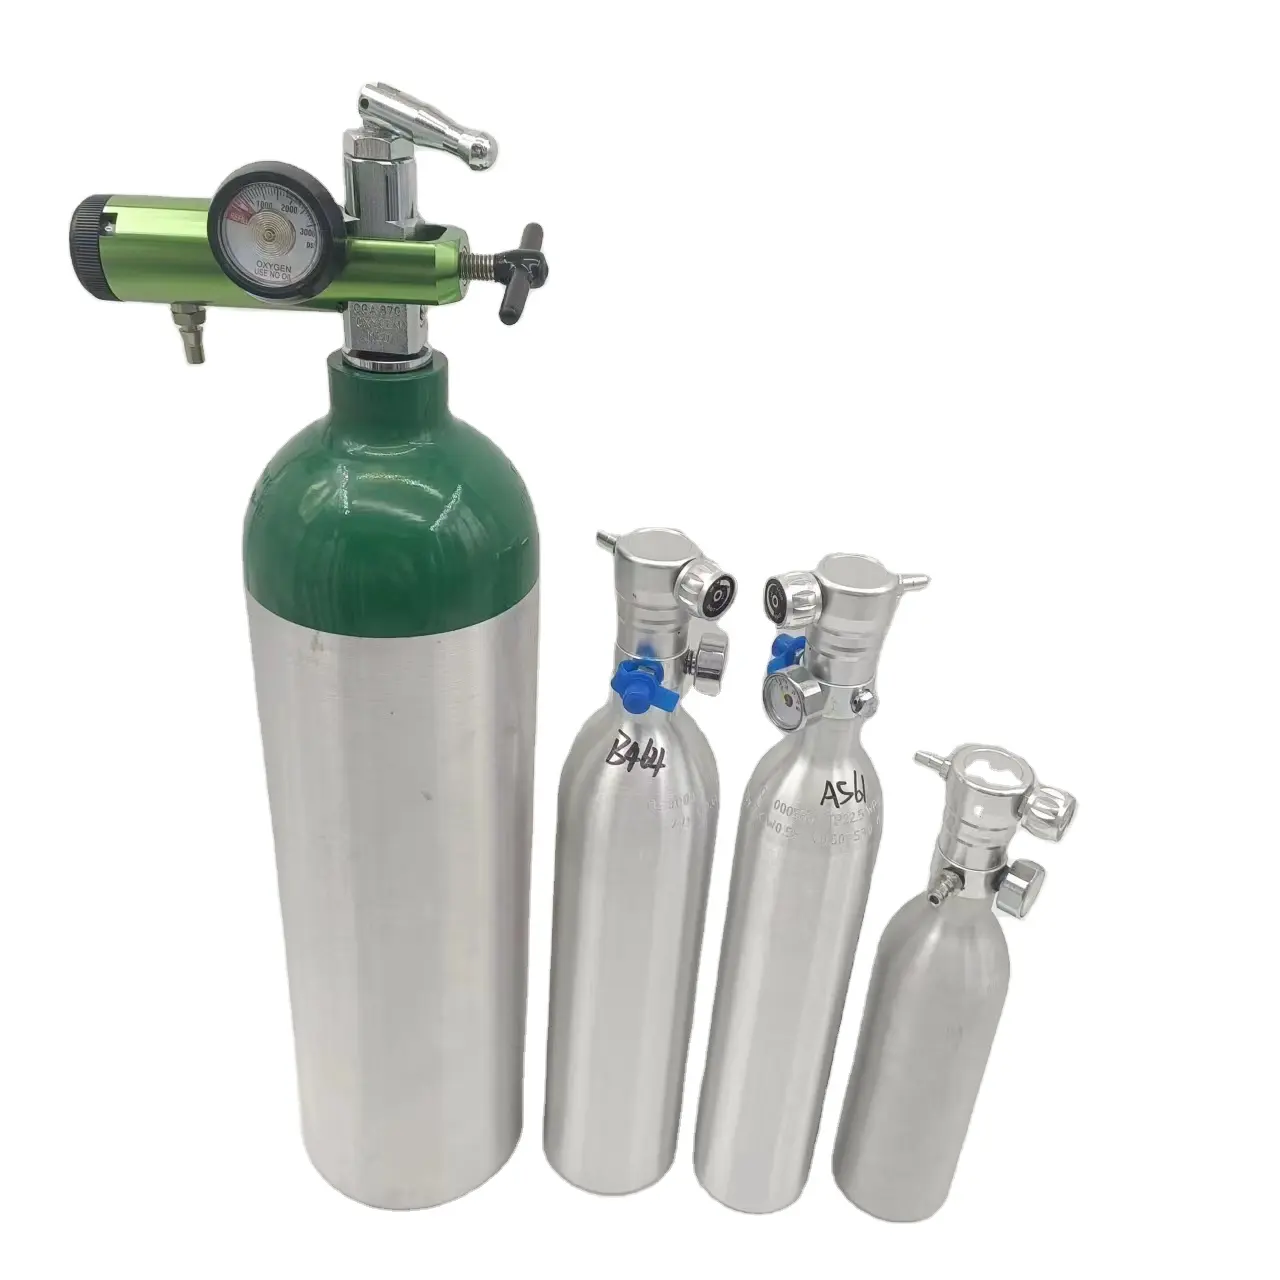 हॉट सेलिंग आर्गन/ऑक्सीजन/कार्बन डाइऑक्साइड/नाइट्रोजन गैस सिलेंडर, पेशेवर चिकित्सा ऑक्सीजन सिलेंडर